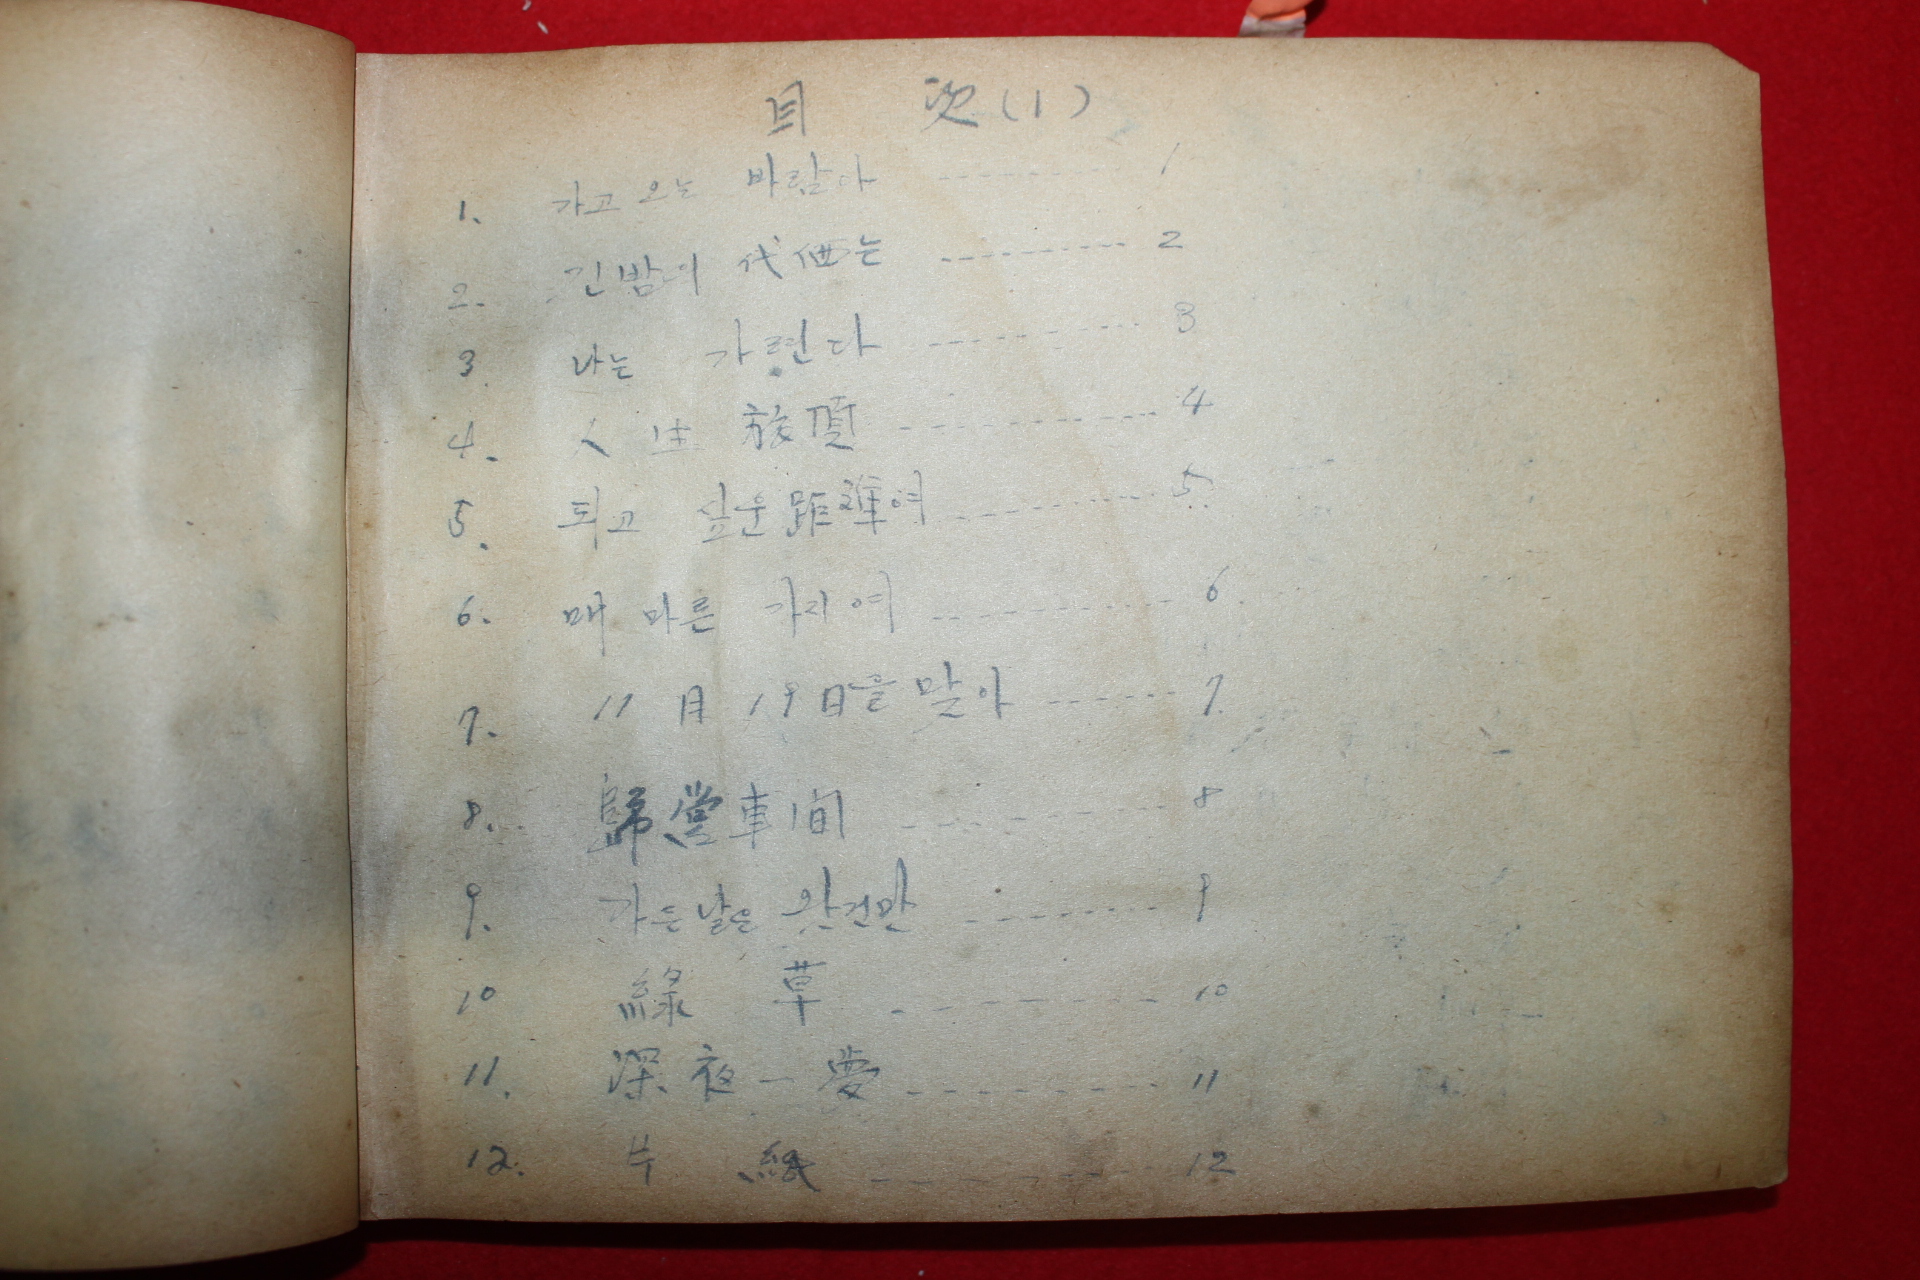 1955년 주천규(朱千圭) 미간행 시집 원고본 푸른 싹